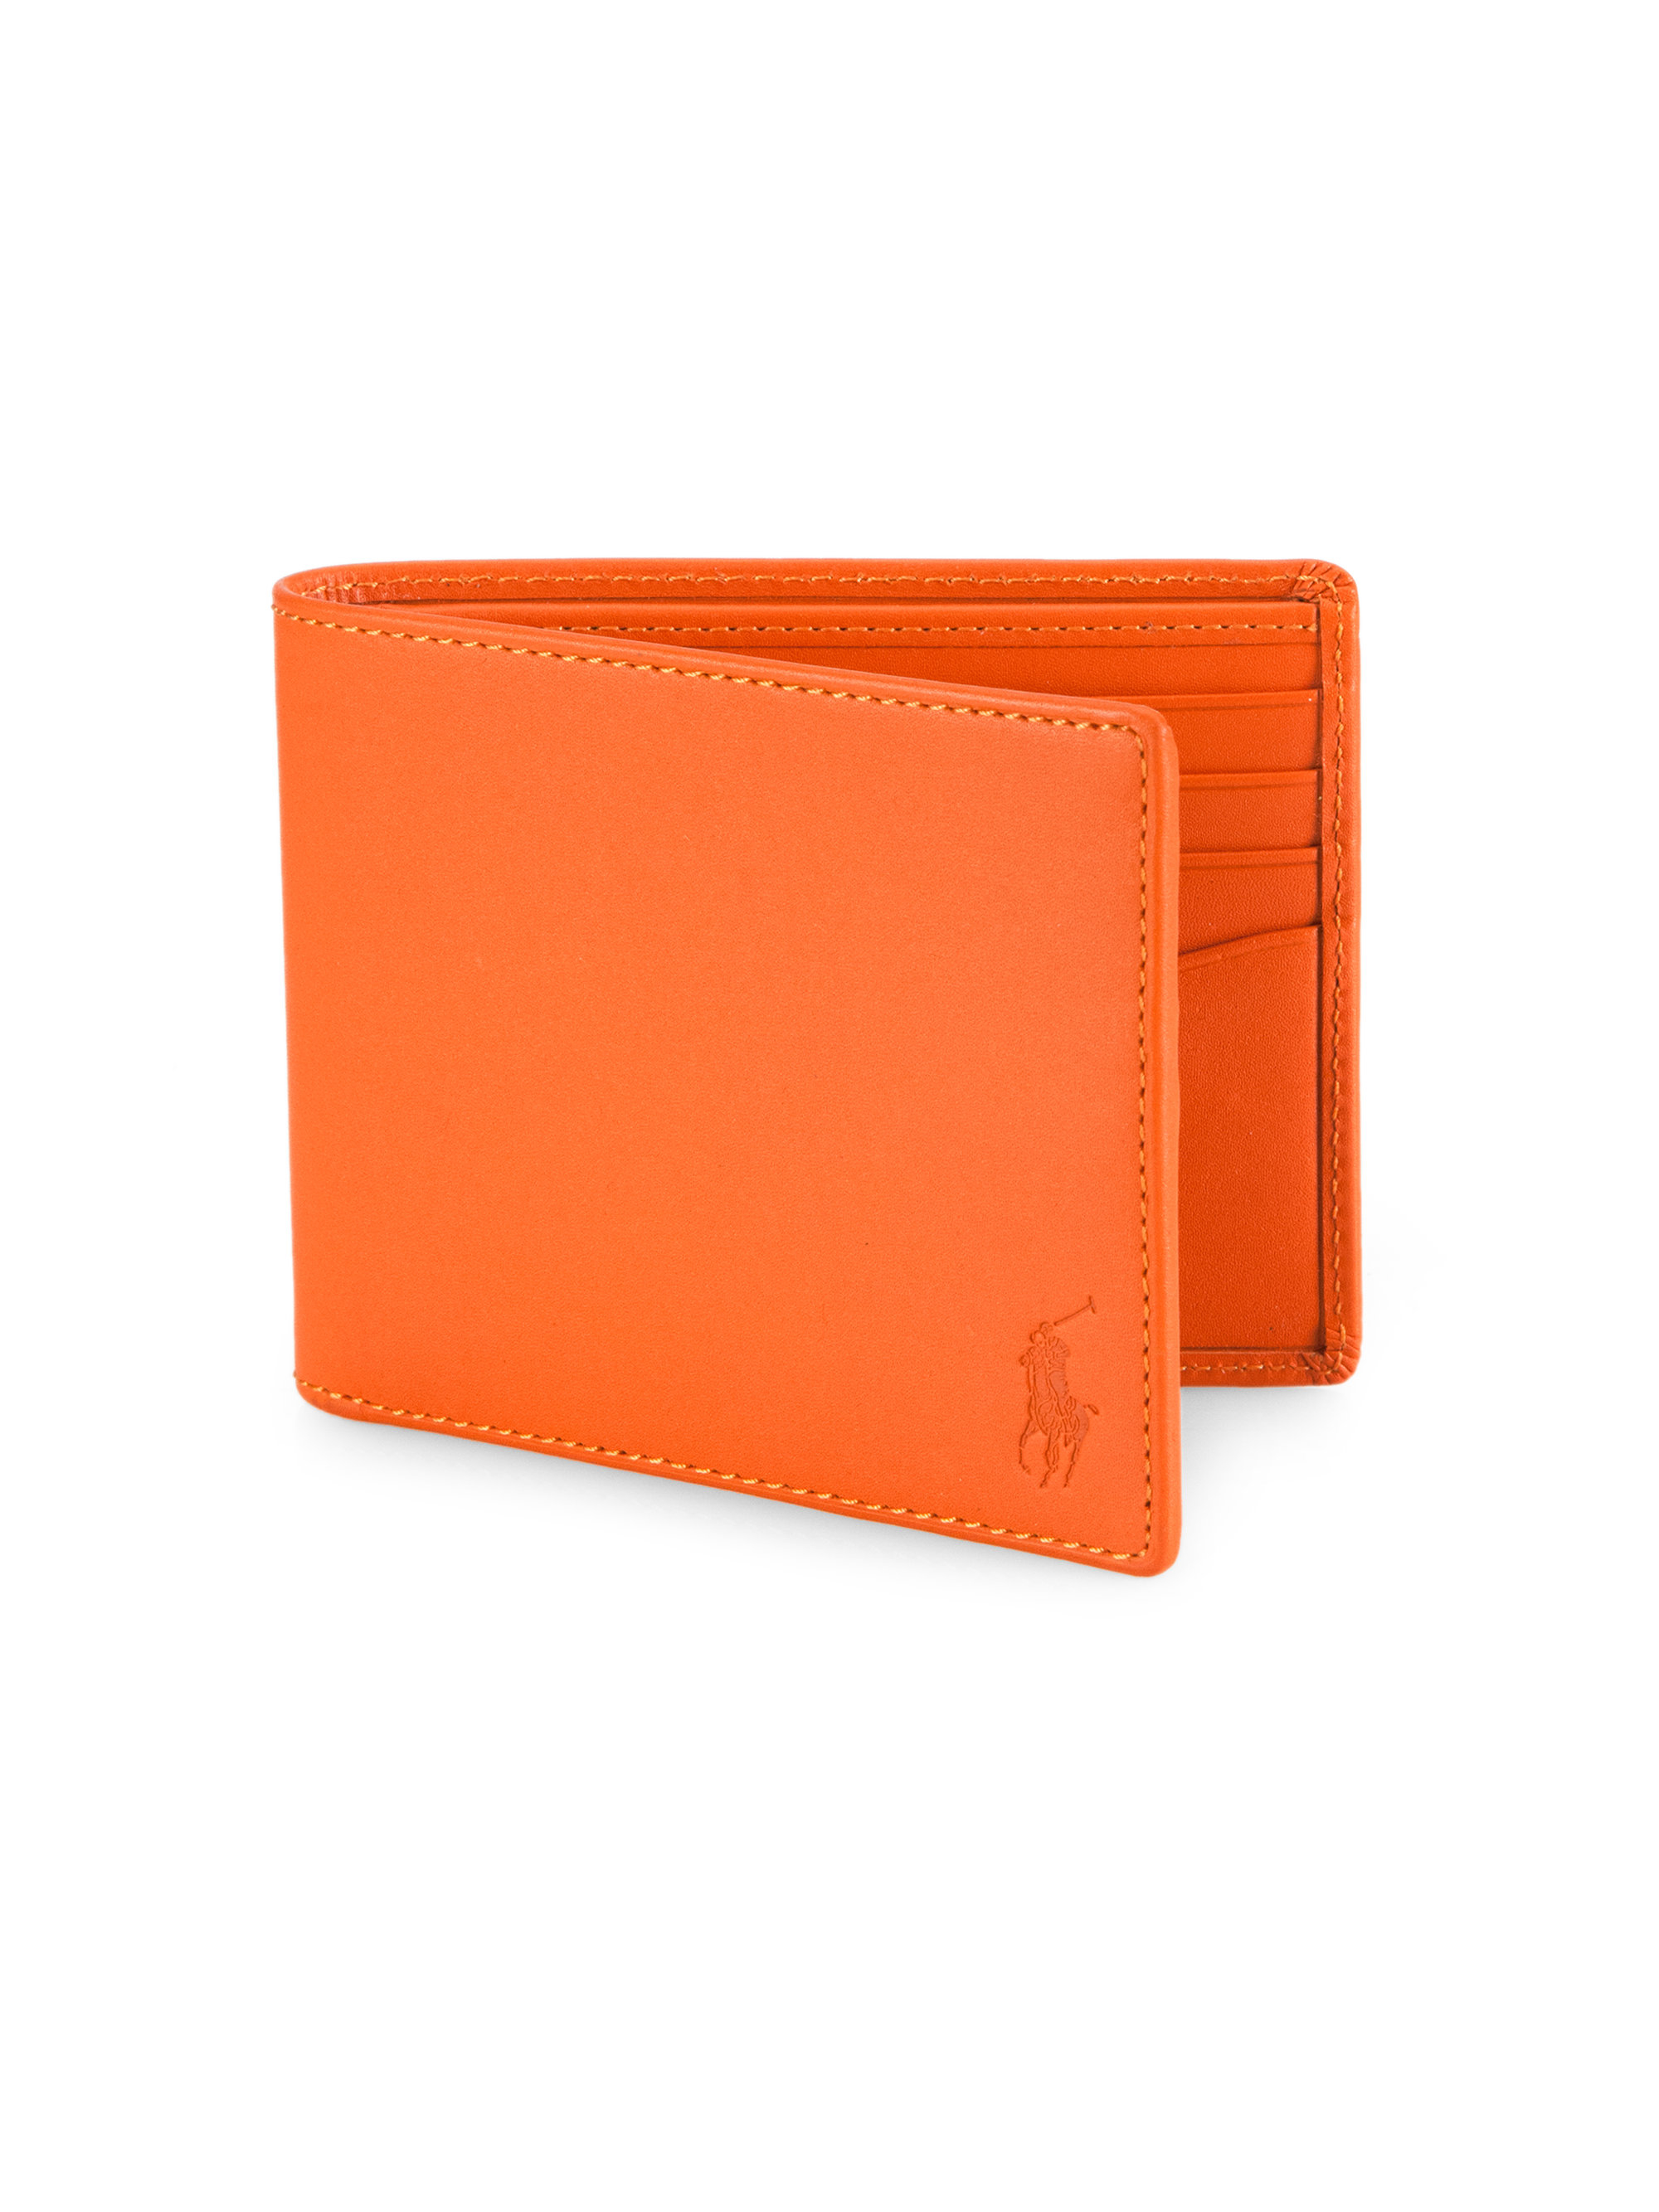 ralph lauren leather wallet